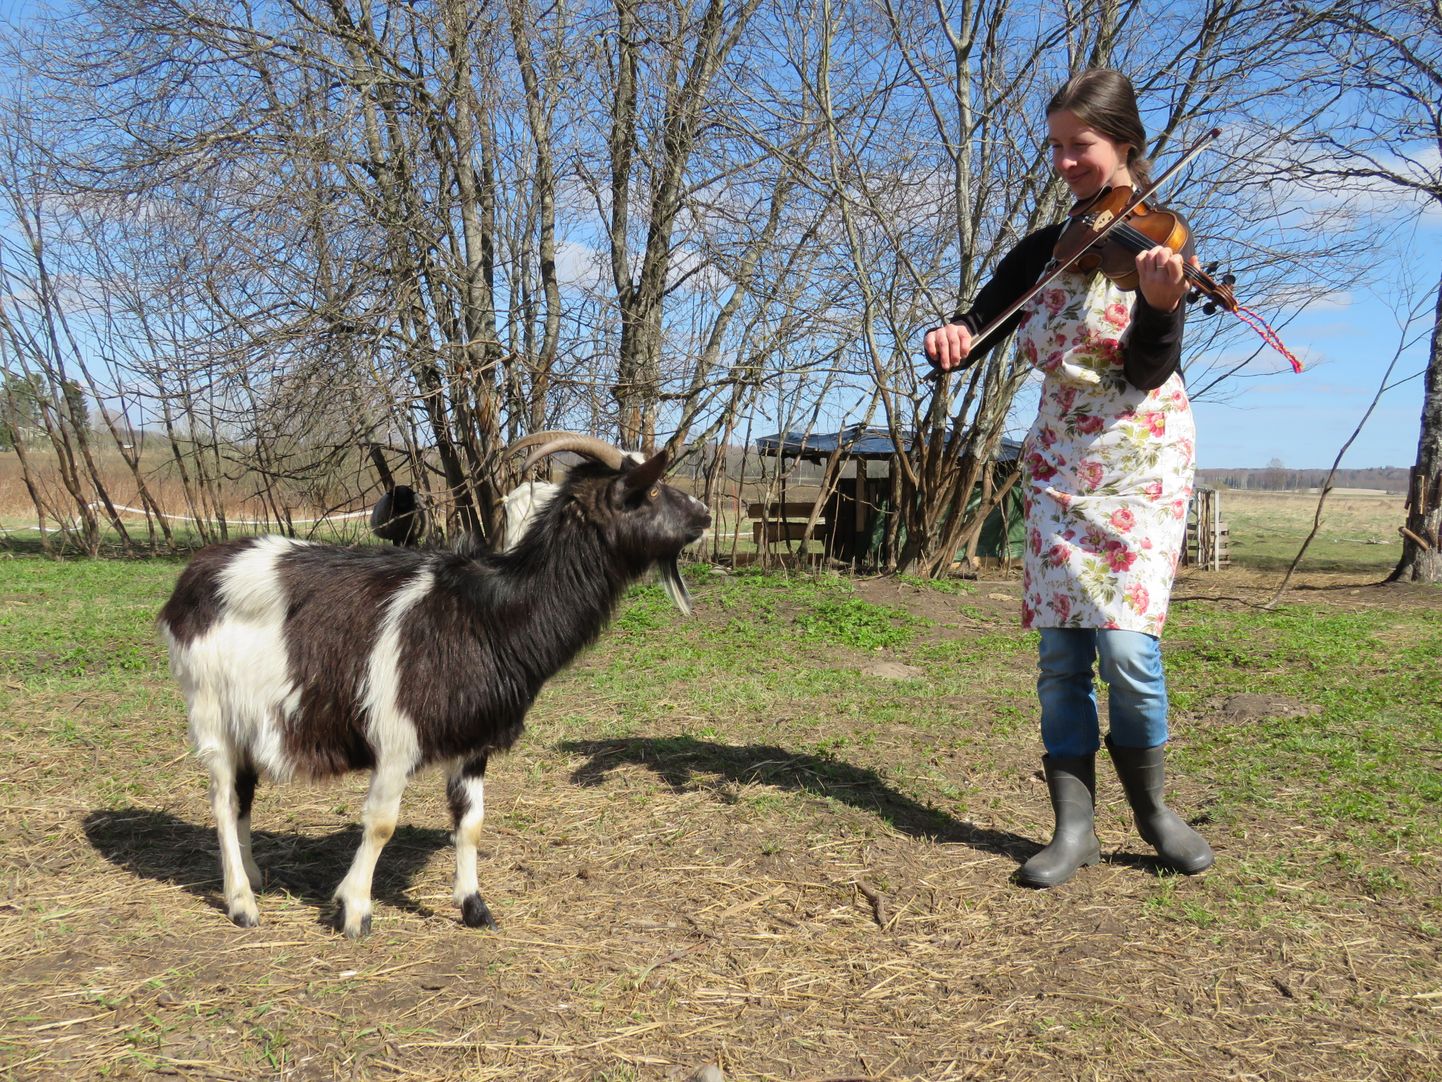 Tunnustatud rahvamuusik Marju Varblane võtab aeg-ajalt viiuli kätte, et ka oma loomadele mängida. Nad kuulavad huviga.